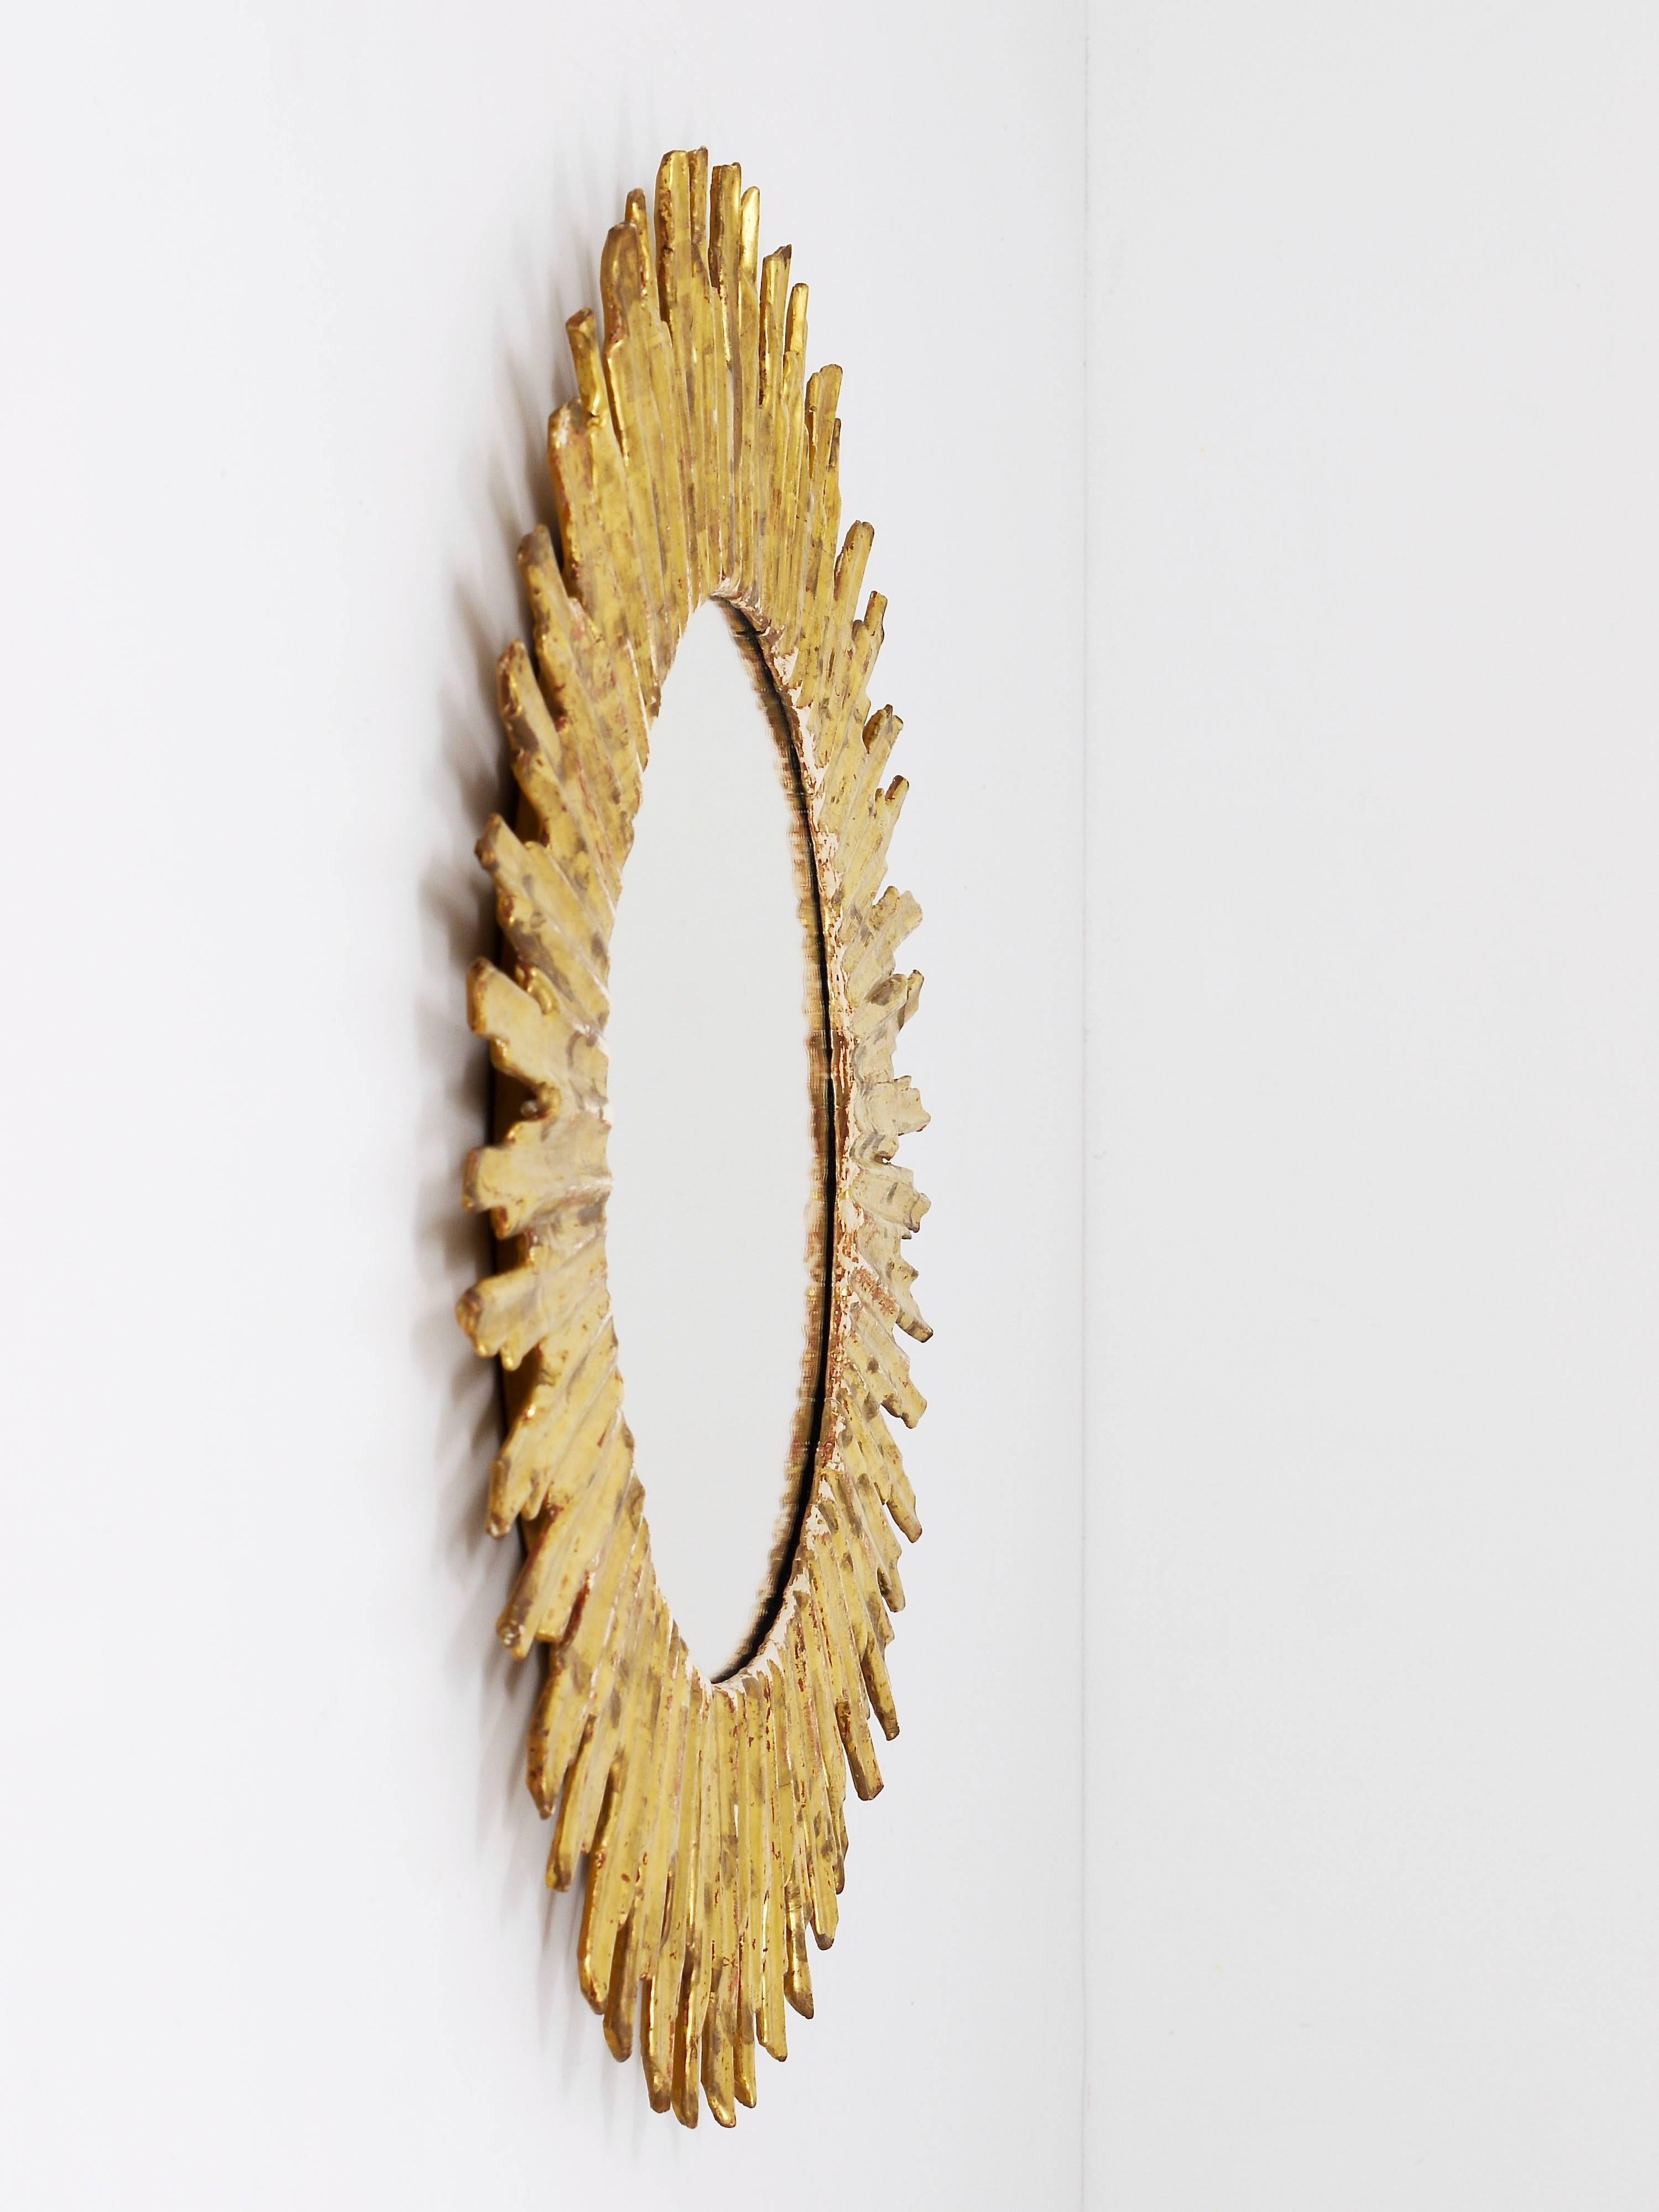 brass sunburst mirror